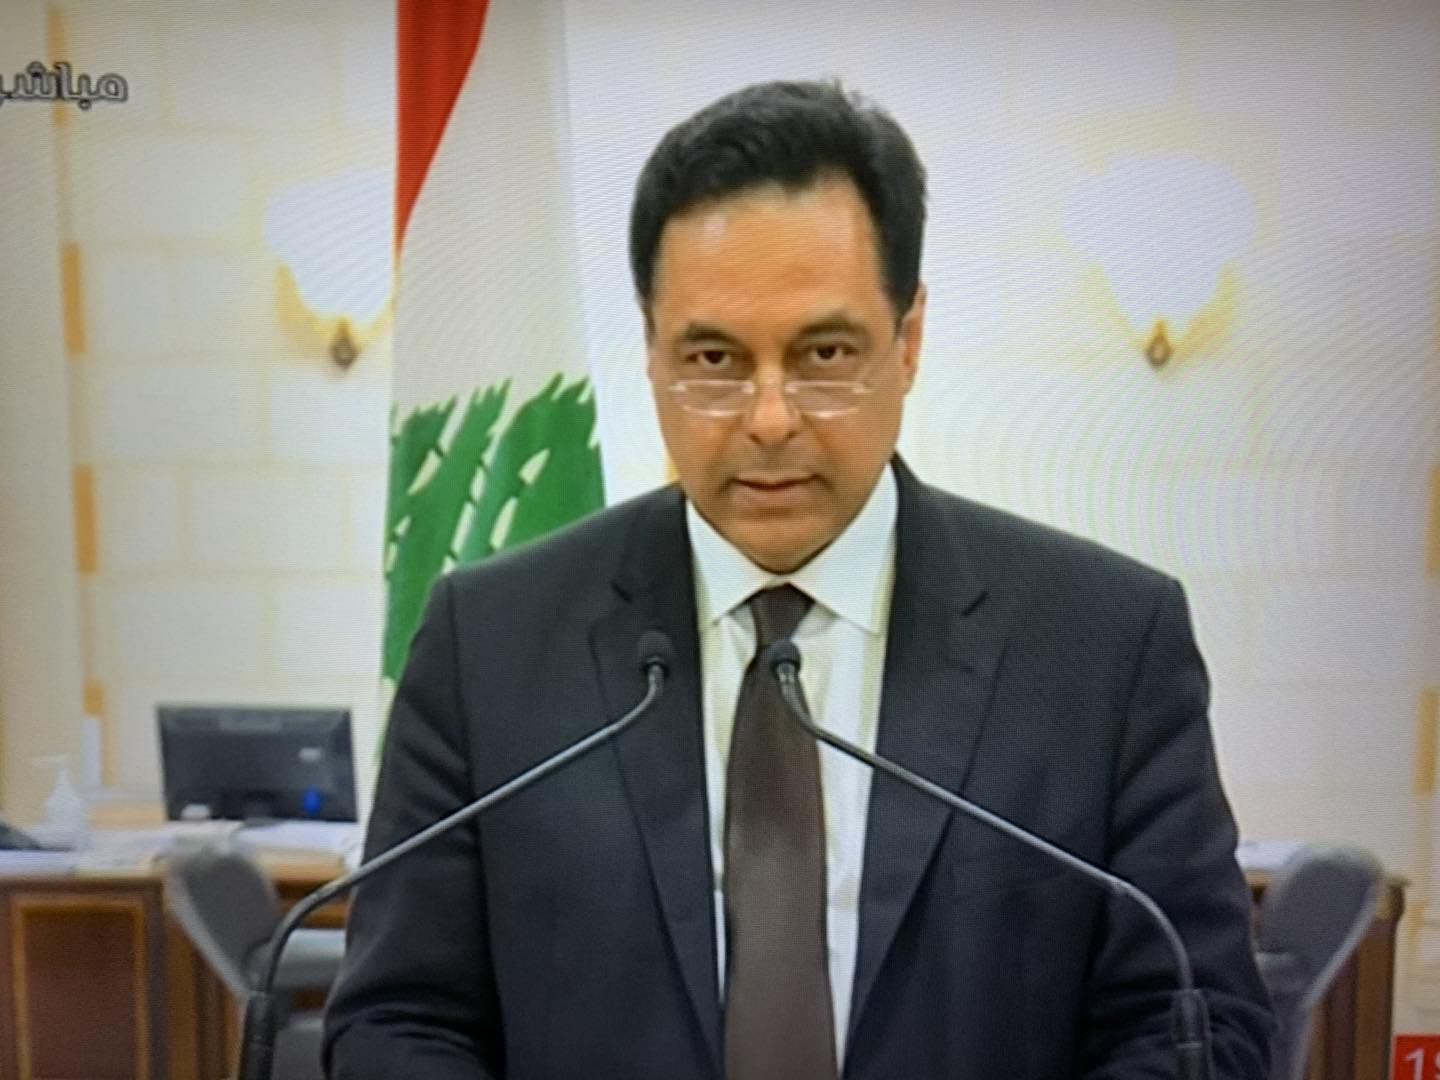 黎巴嫩总理迪亚布在电视讲话中宣布本届政府辞职